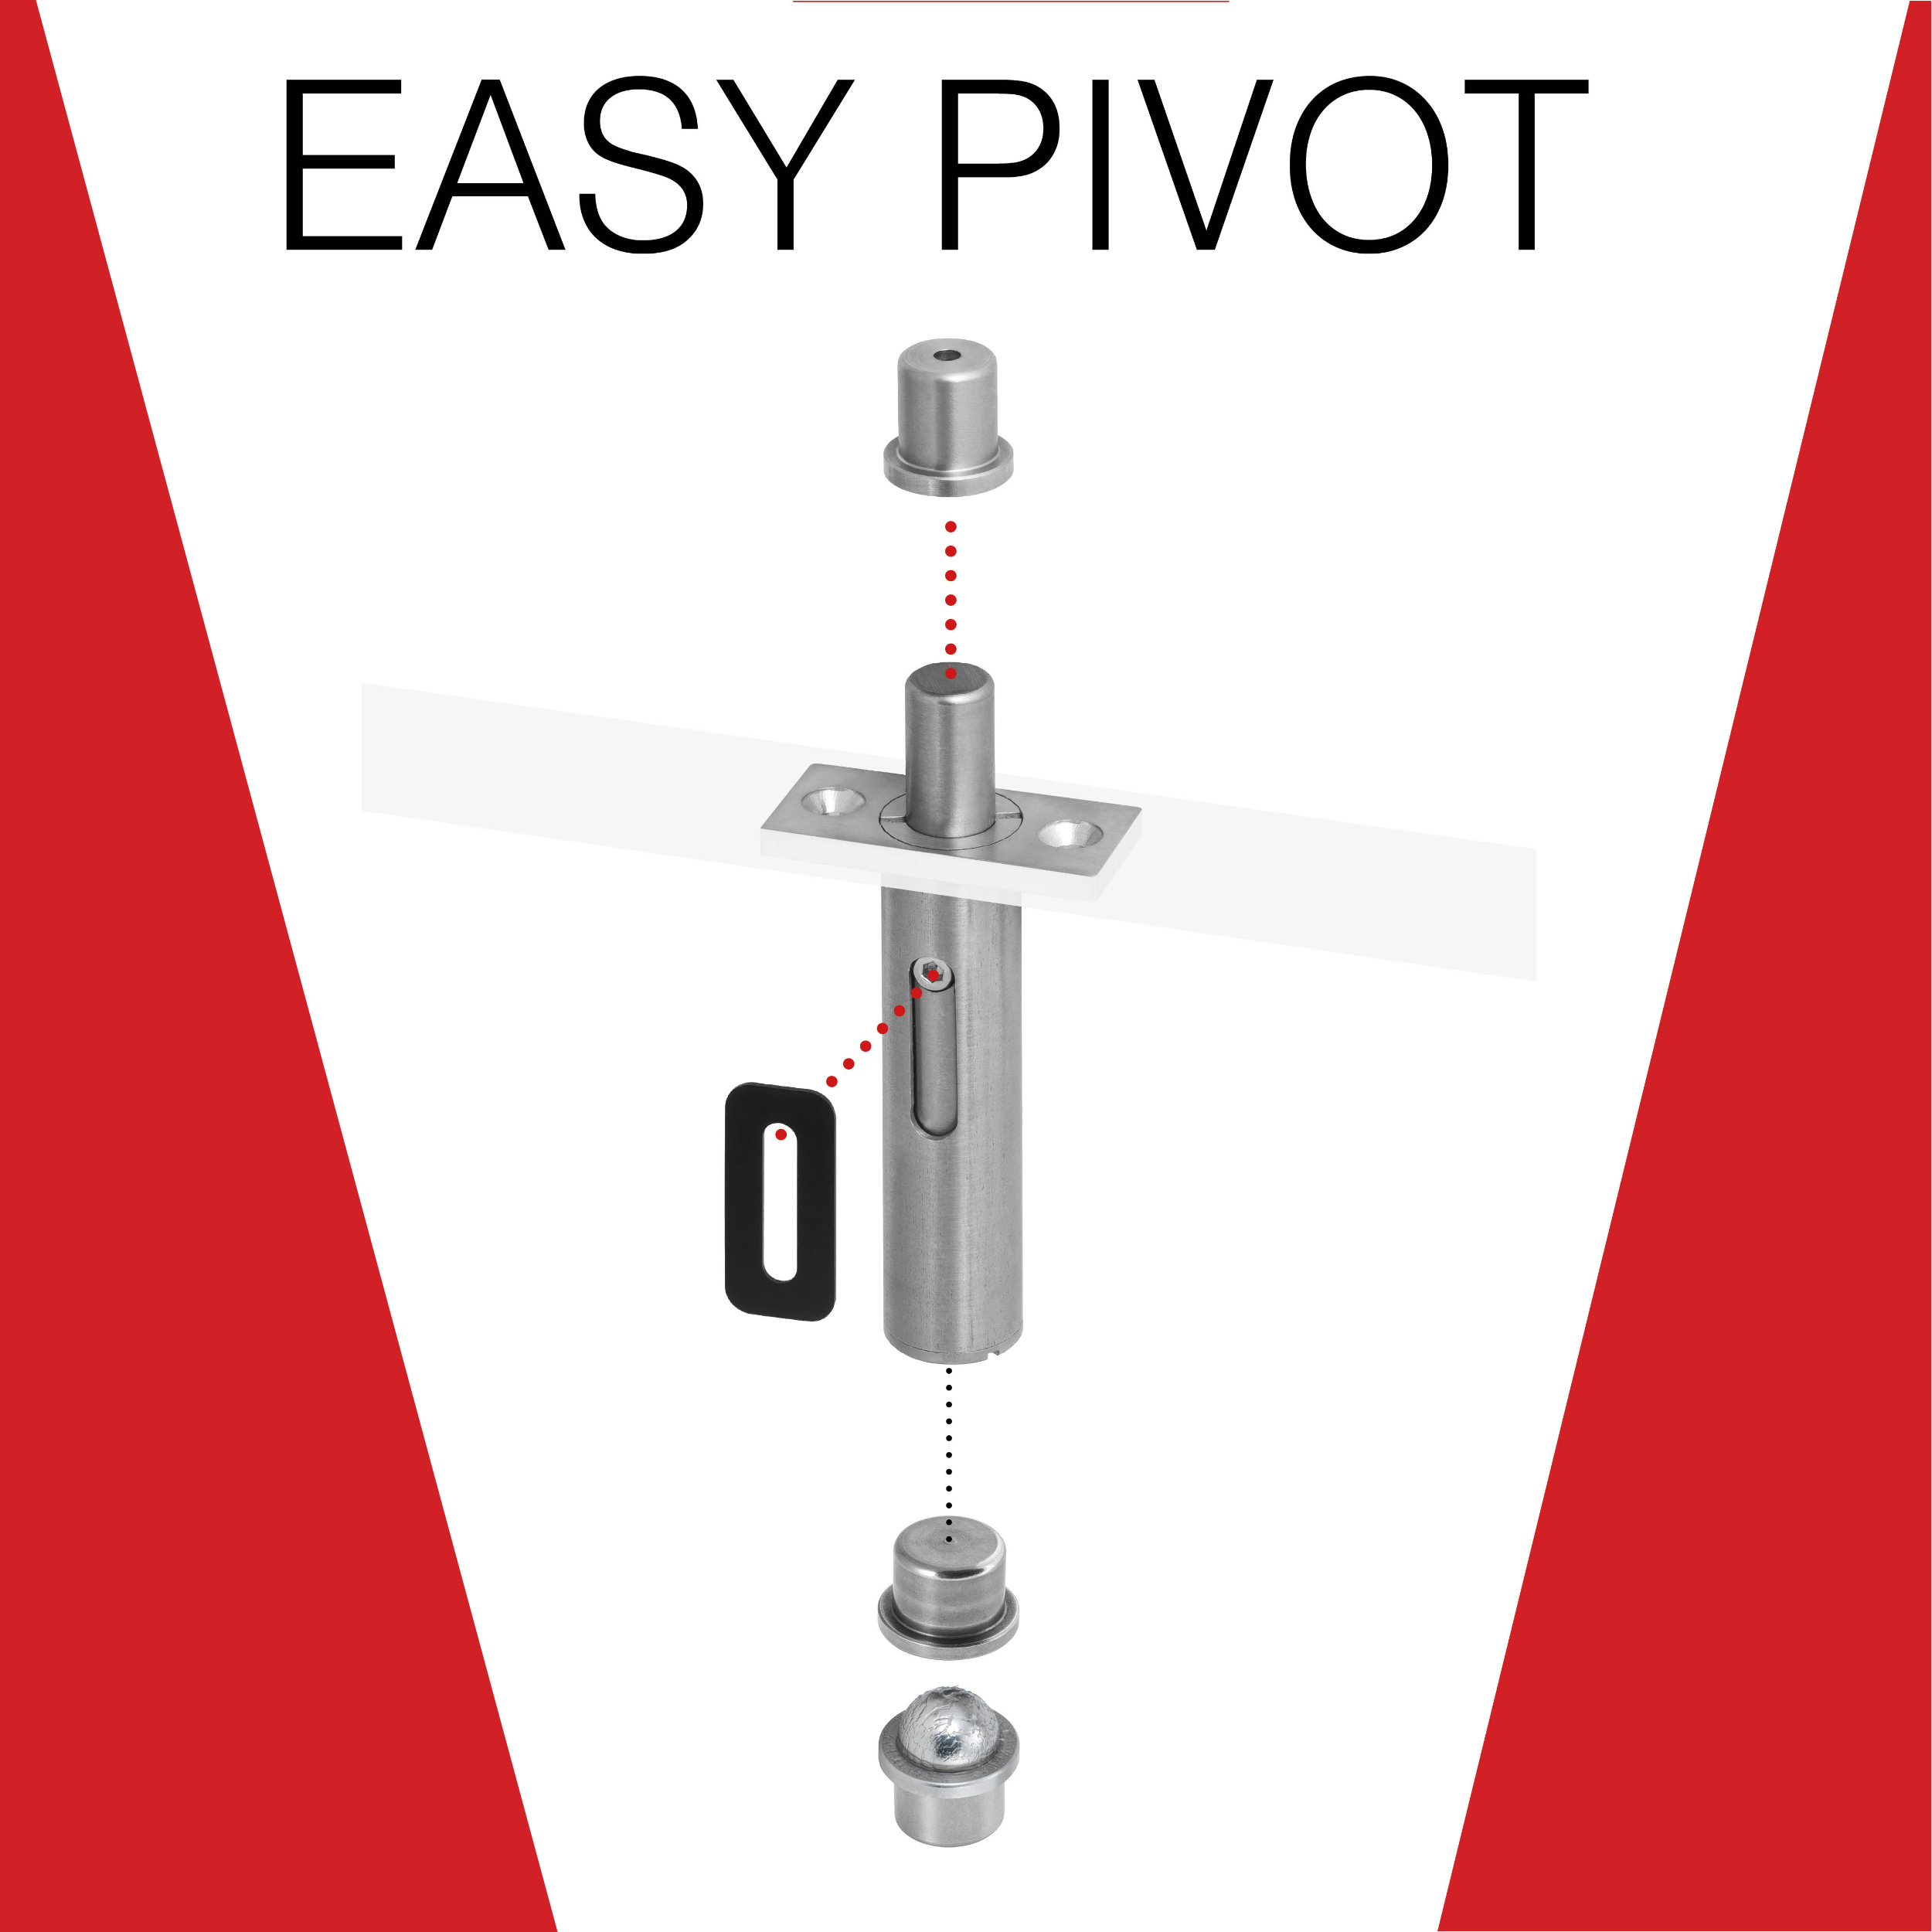 Easy Pivot, la bisagra que pivota mucho más que puertas